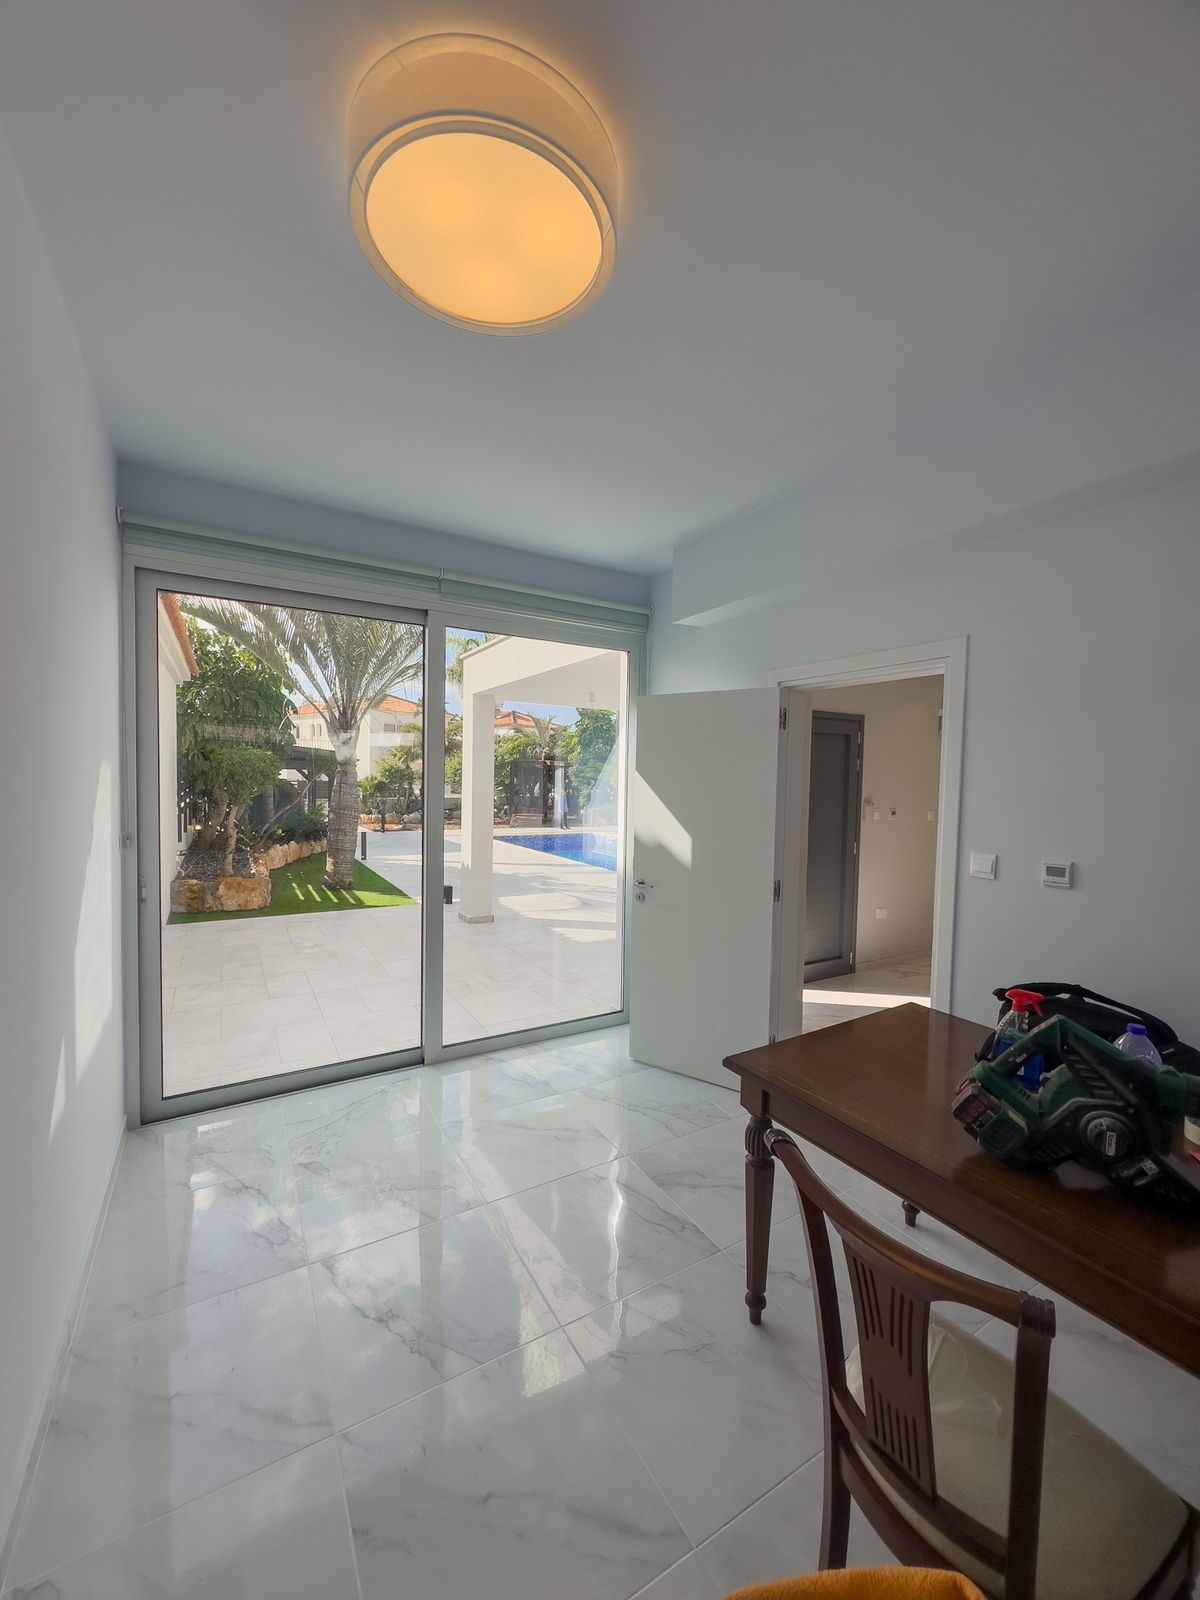 Продам дом в 2 этажа Кипр, г. Айя-Напа (Ayia Napa), 700 000 Евро. - фотография